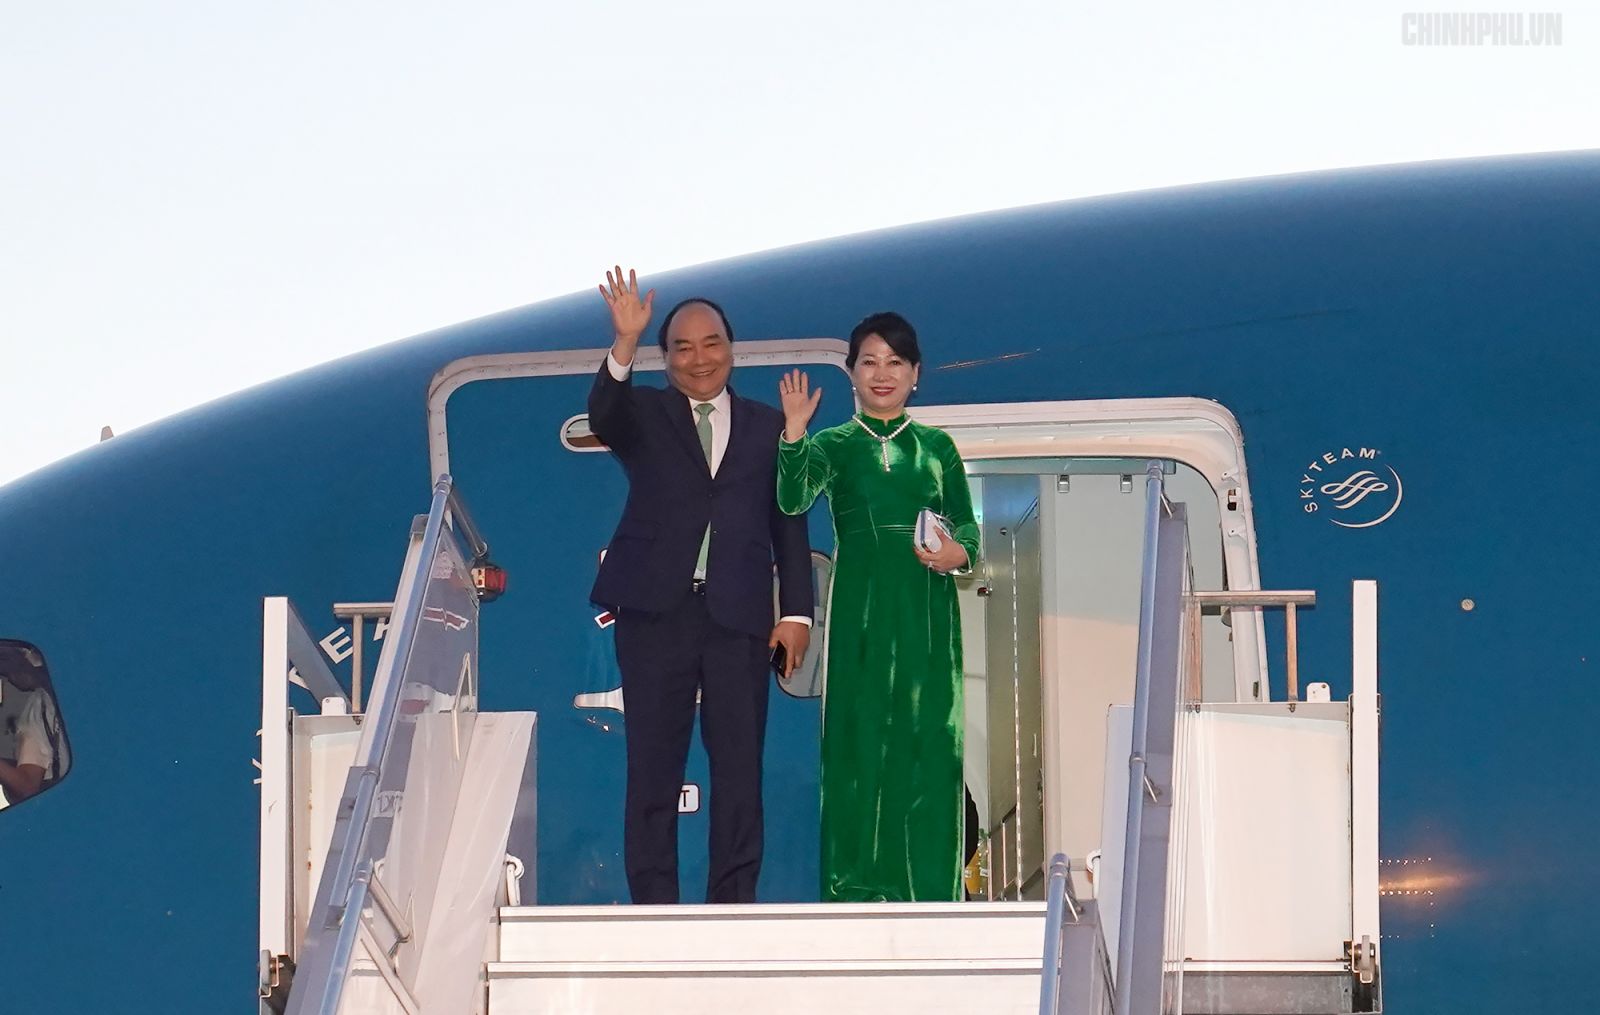 Thủ tướng Nguyễn Xuân Phúc và Phu nhân lên máy bay về Thủ đô Hà Nội, kết thúc tốt đẹp chuyến thăm chính thức Romania và Cộng hòa Czech. Ảnh: VGP/Quang Hiếu